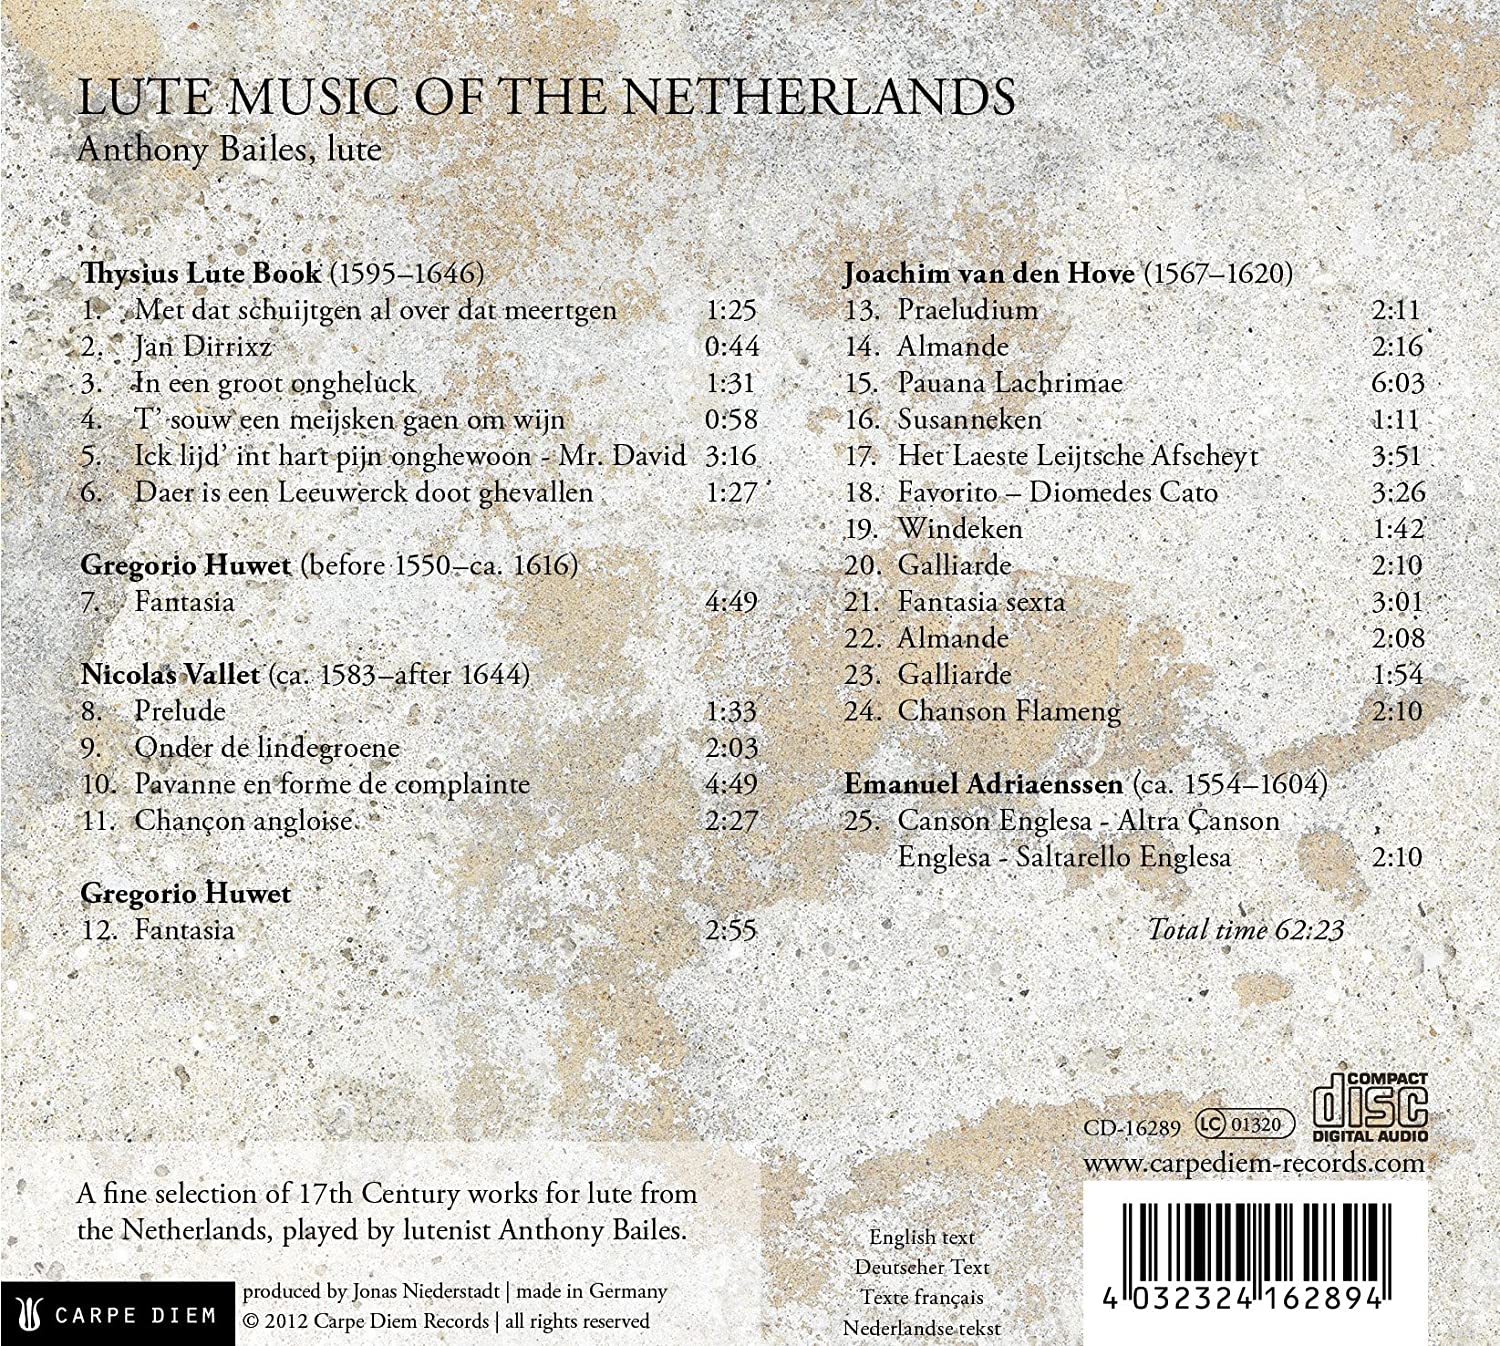 Lute music of the Netherlands - Nicolas Vallet, Gregorio Huwet, Joachim van den Hove - slide-1